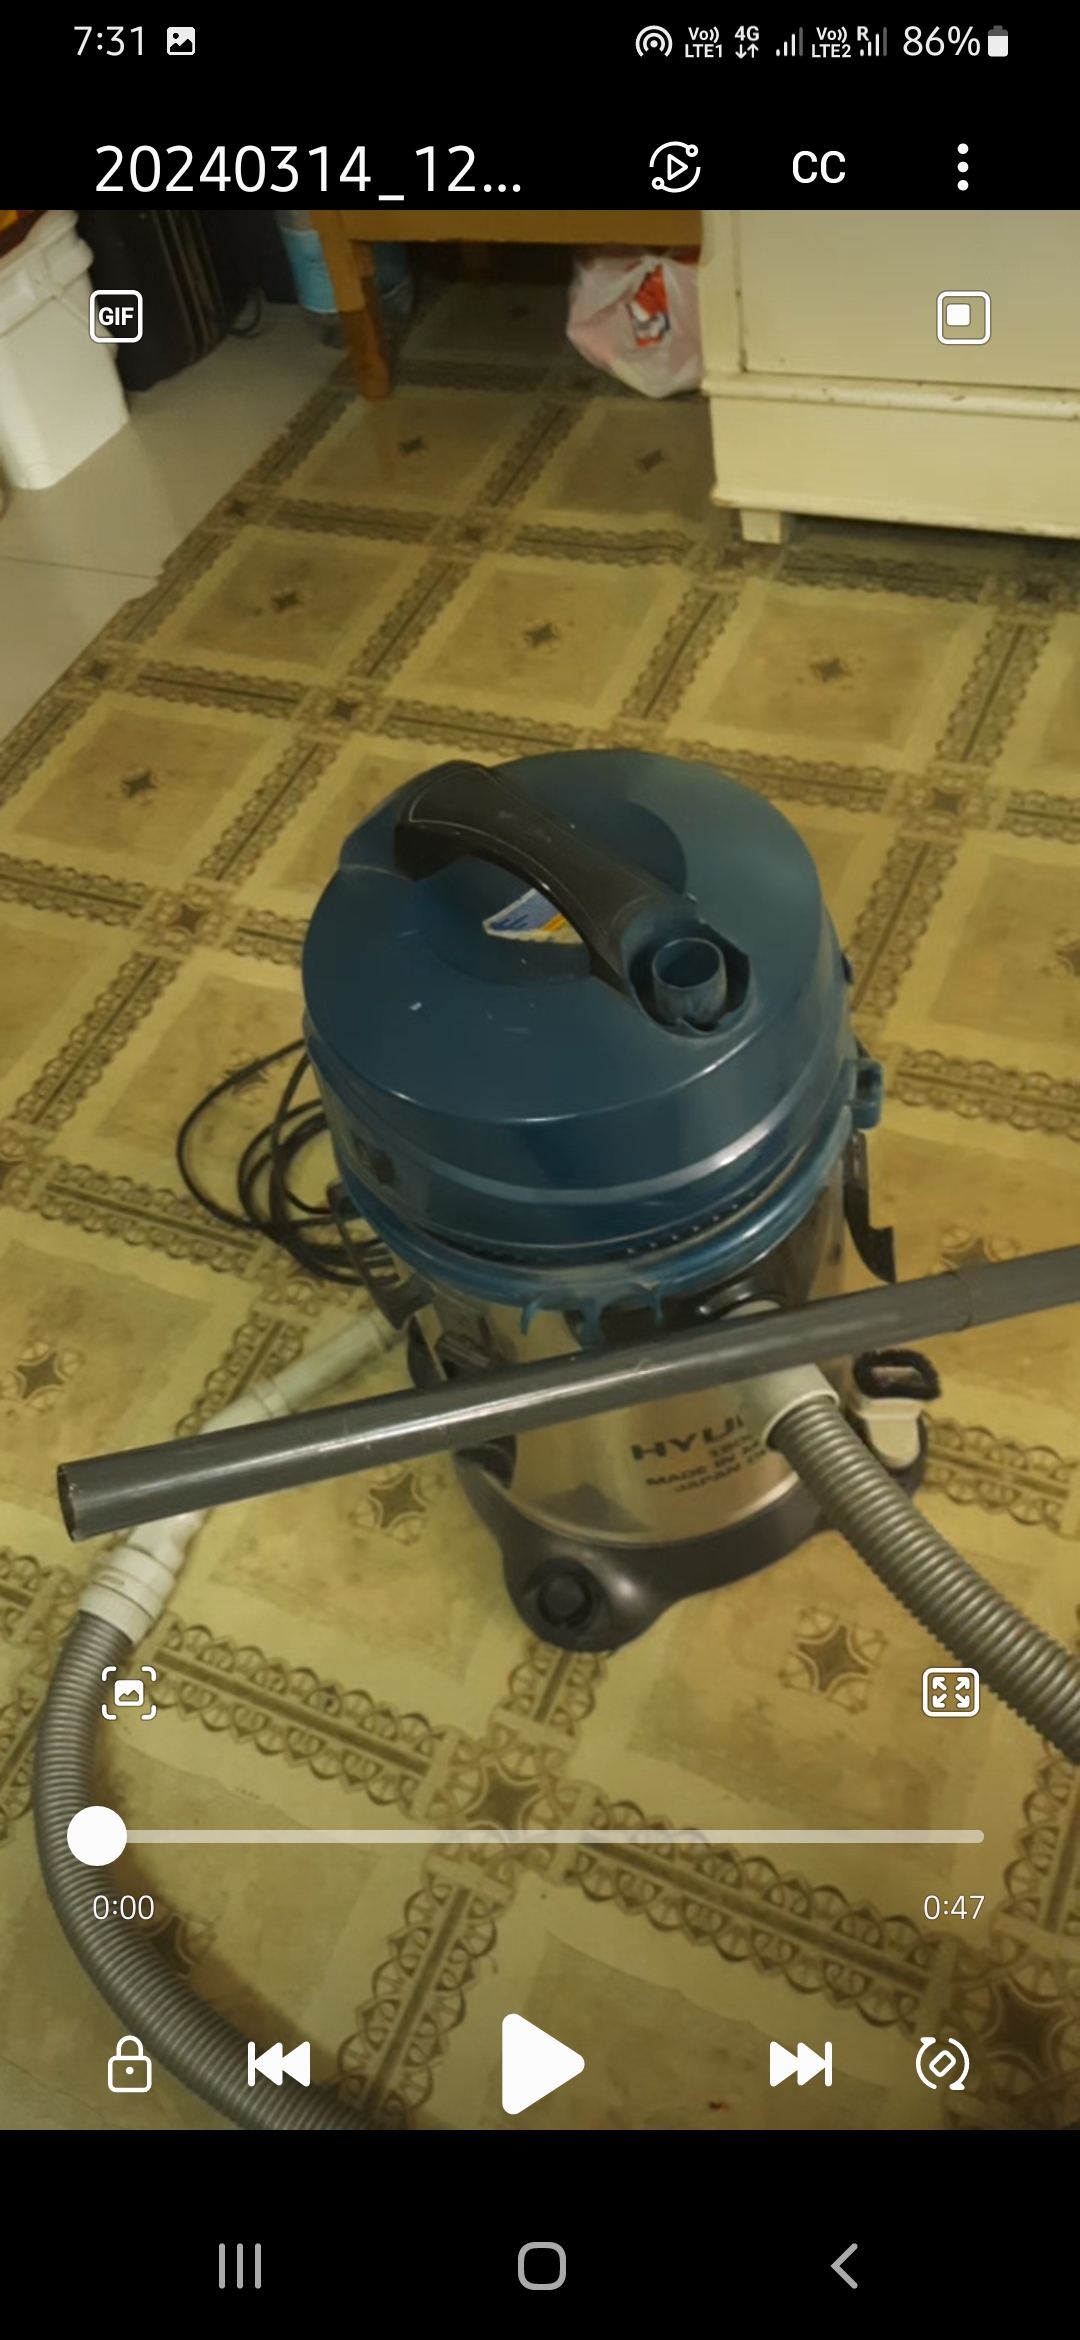 Hyundai Vacuum cleaner, 1800 Watts 